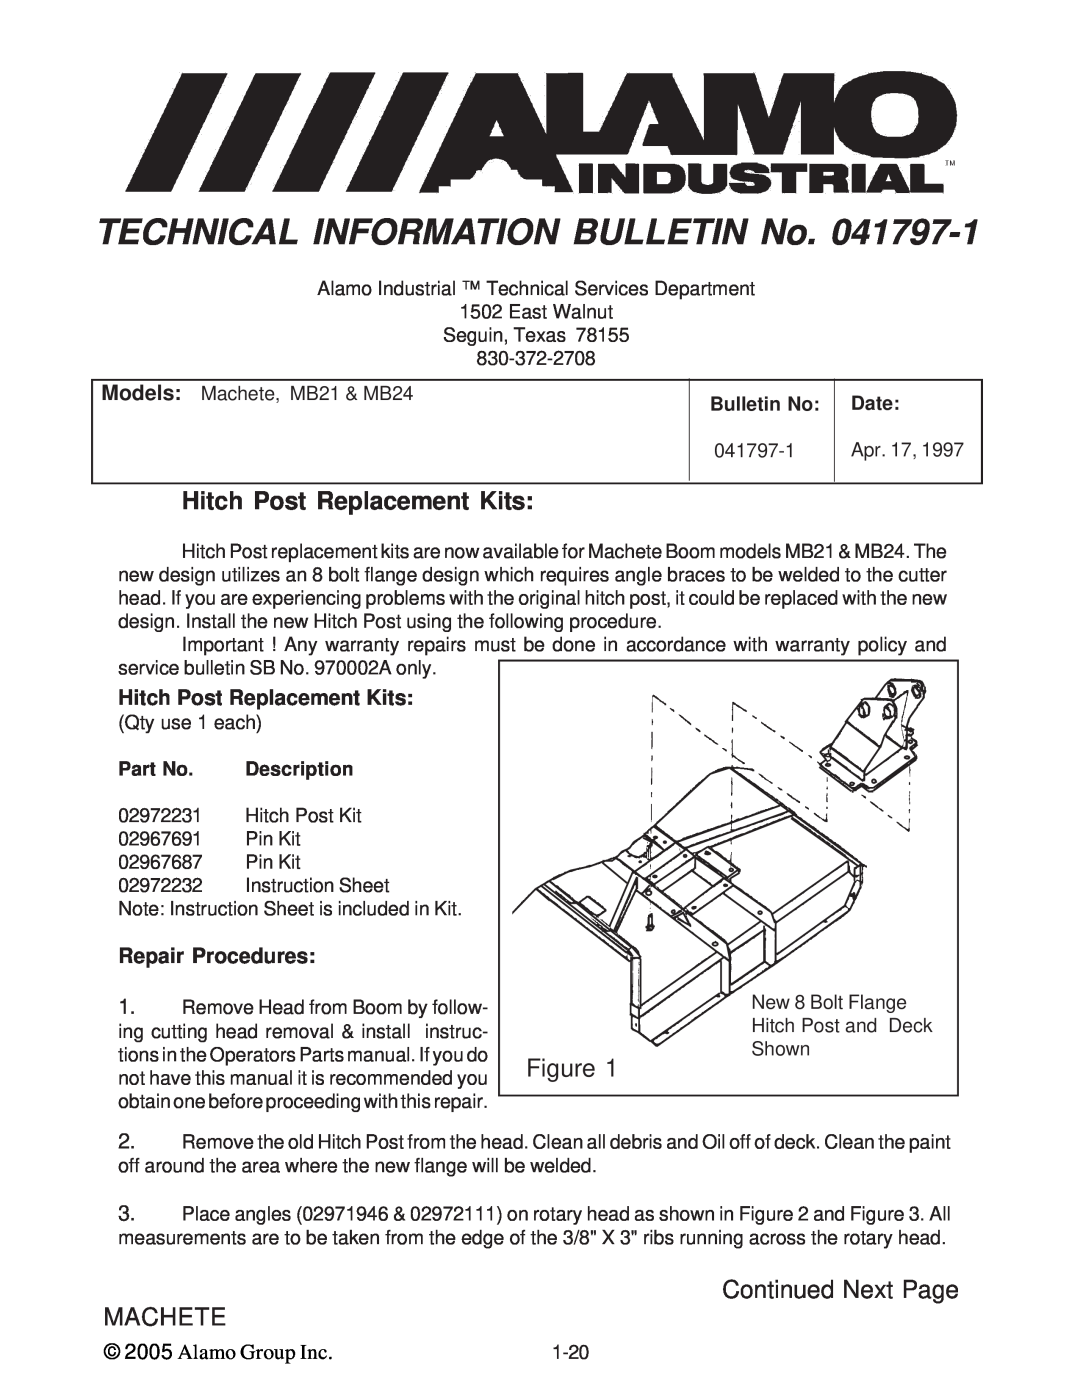 Alamo T 7740 Hitch Post Replacement Kits, Repair Procedures, Part No, Description, TECHNICAL INFORMATION BULLETIN No, Date 